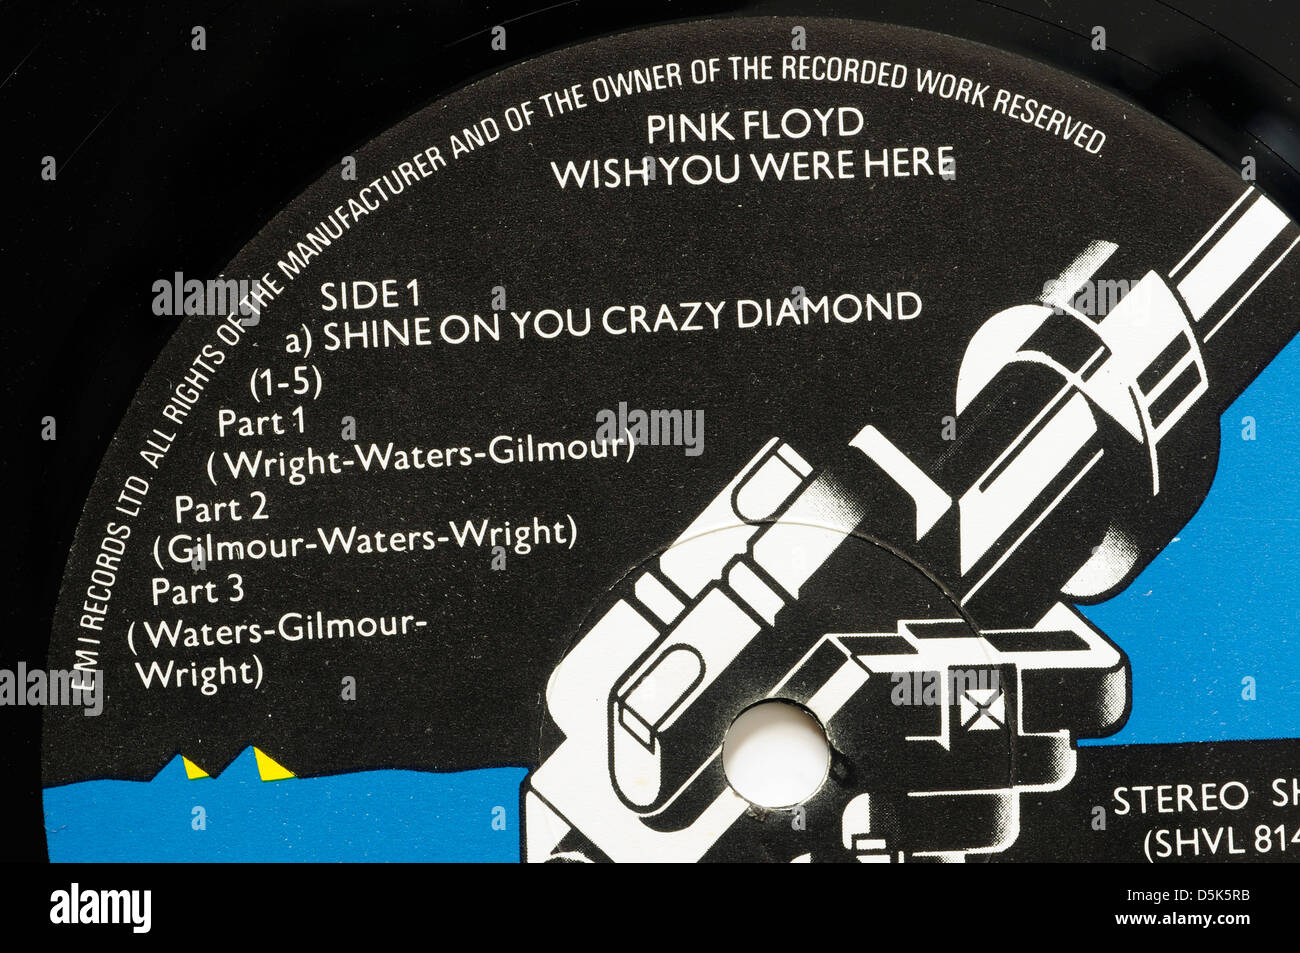 Pink Floyd Wish You Were Here Plattenlabel mit klassischen Titel Shine On You Crazy Diamond Stockfoto